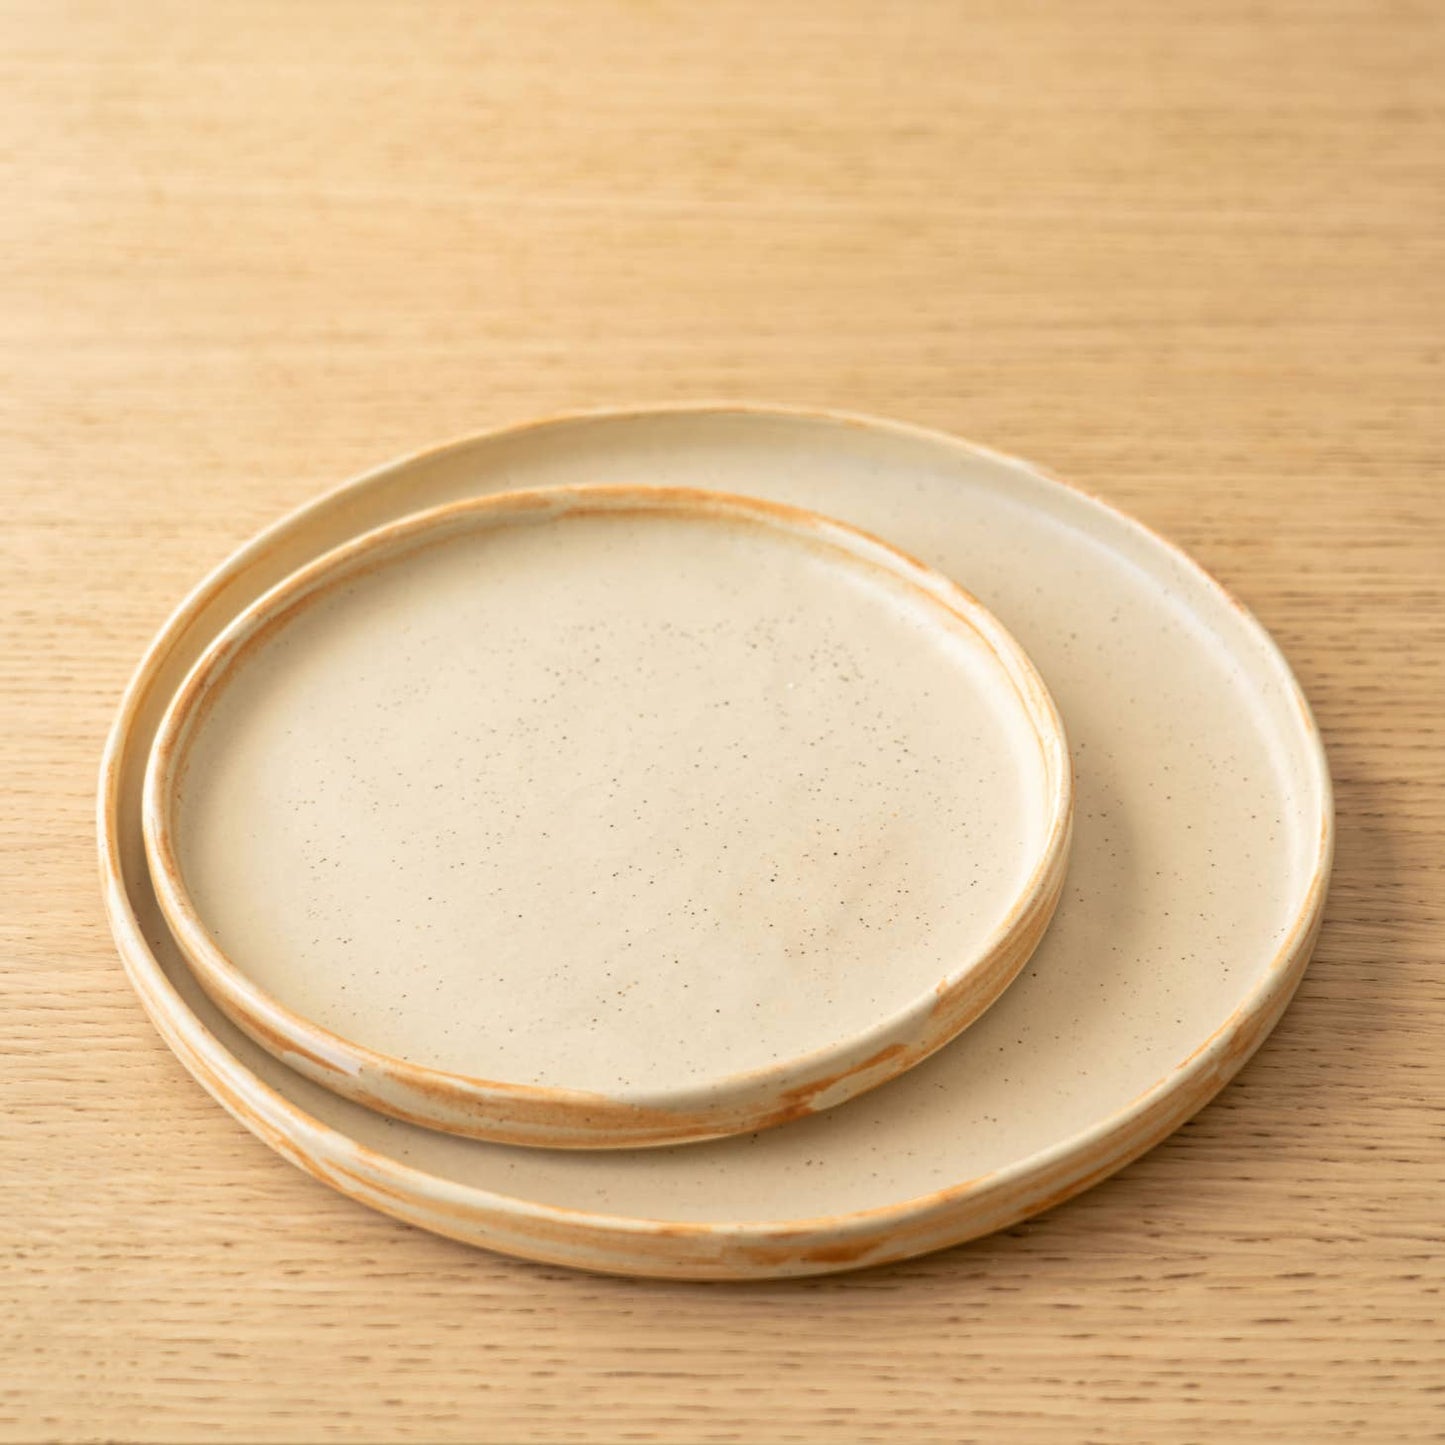 Ethical Trade Co Tabletop Handmade Ukrainian Stoneware Dinner Plates